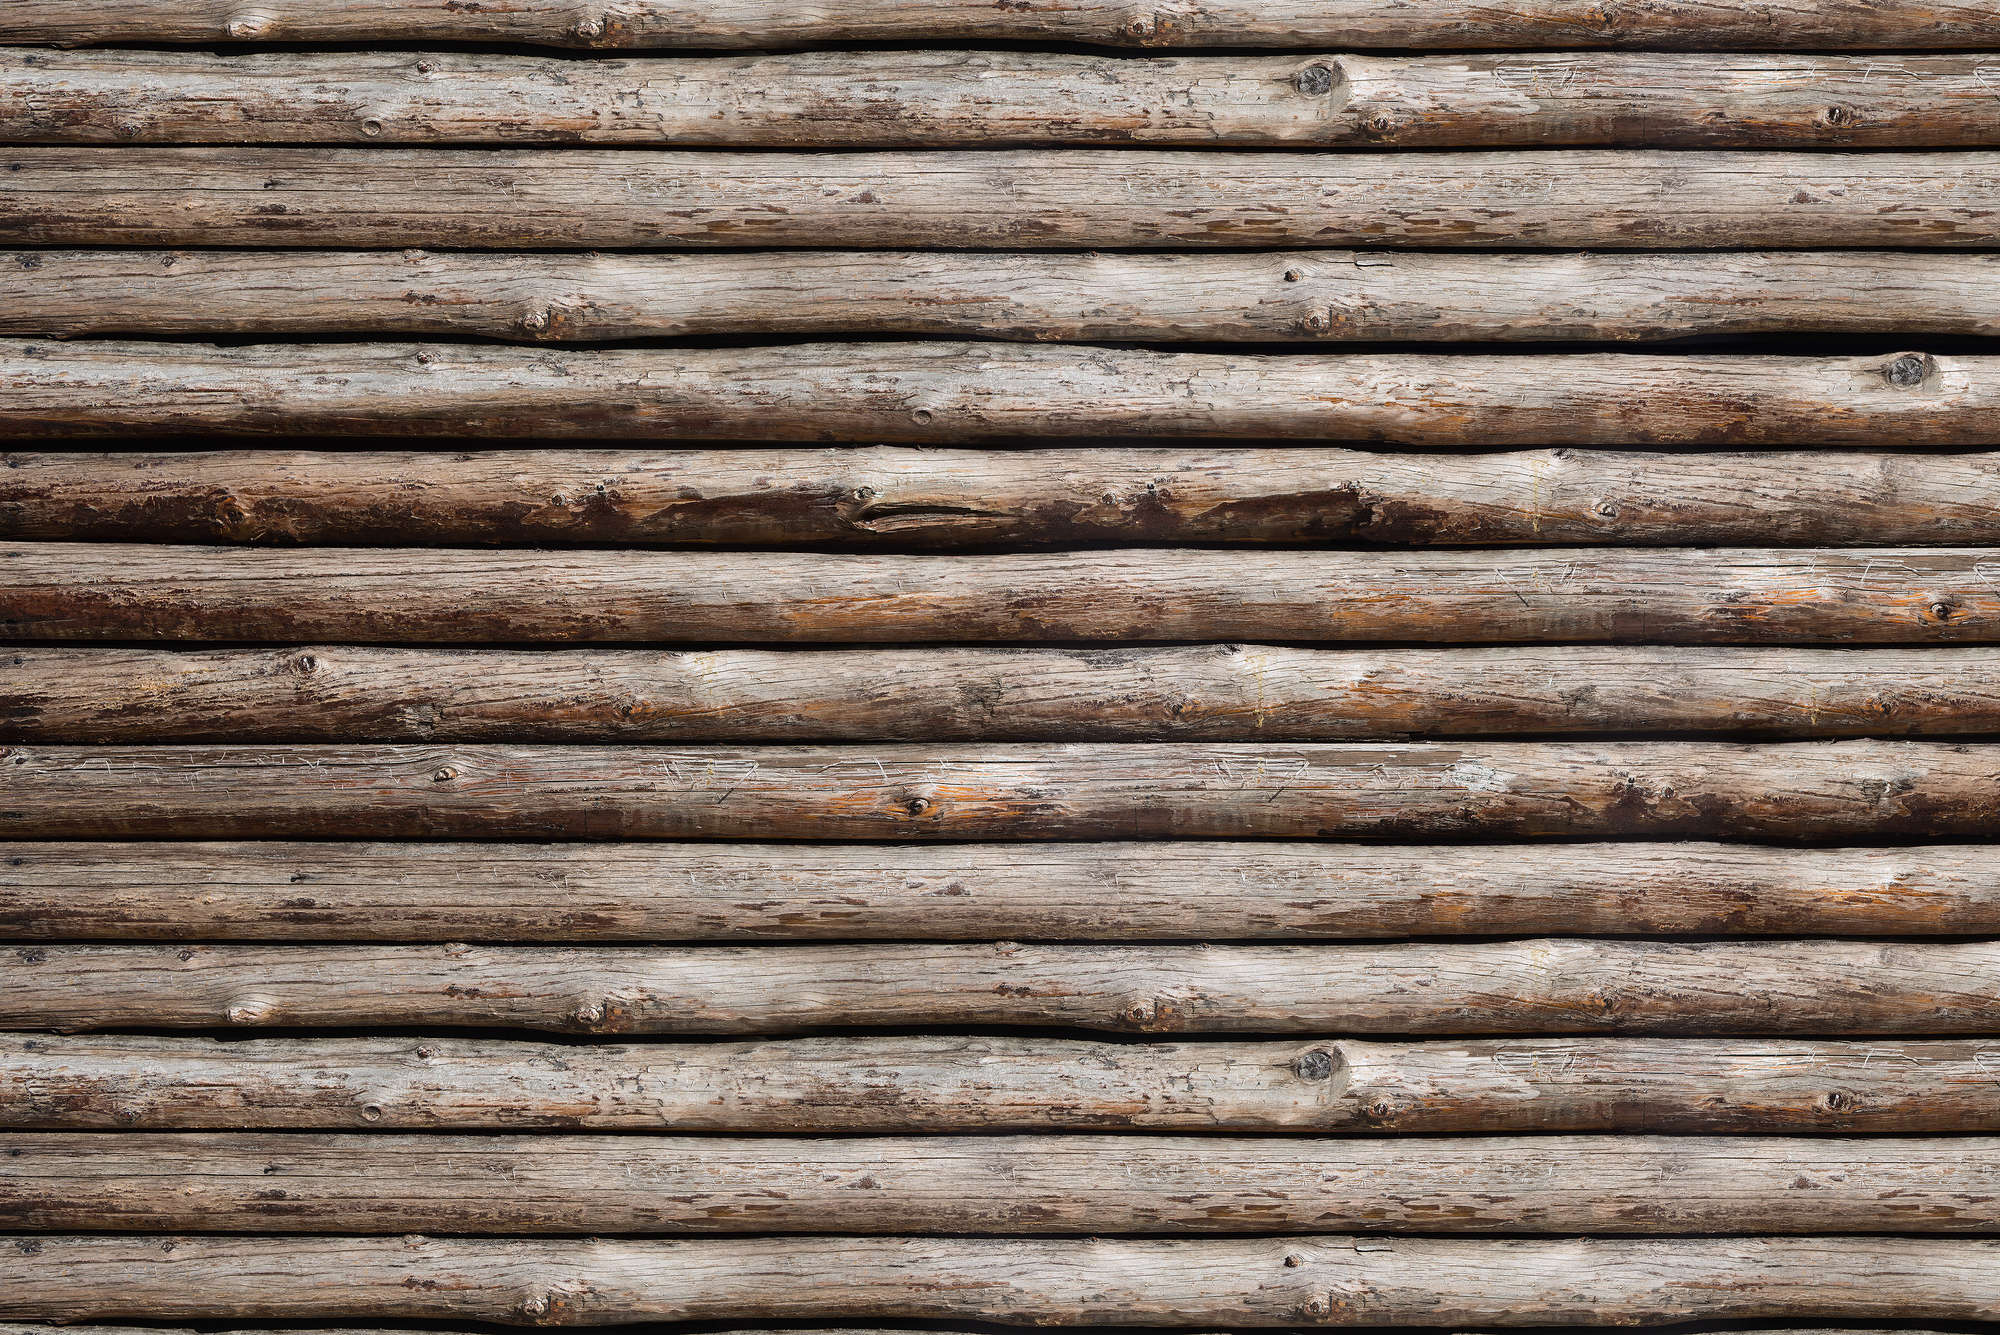             Mural de madera de cabaña de troncos sobre vellón liso nacarado
        